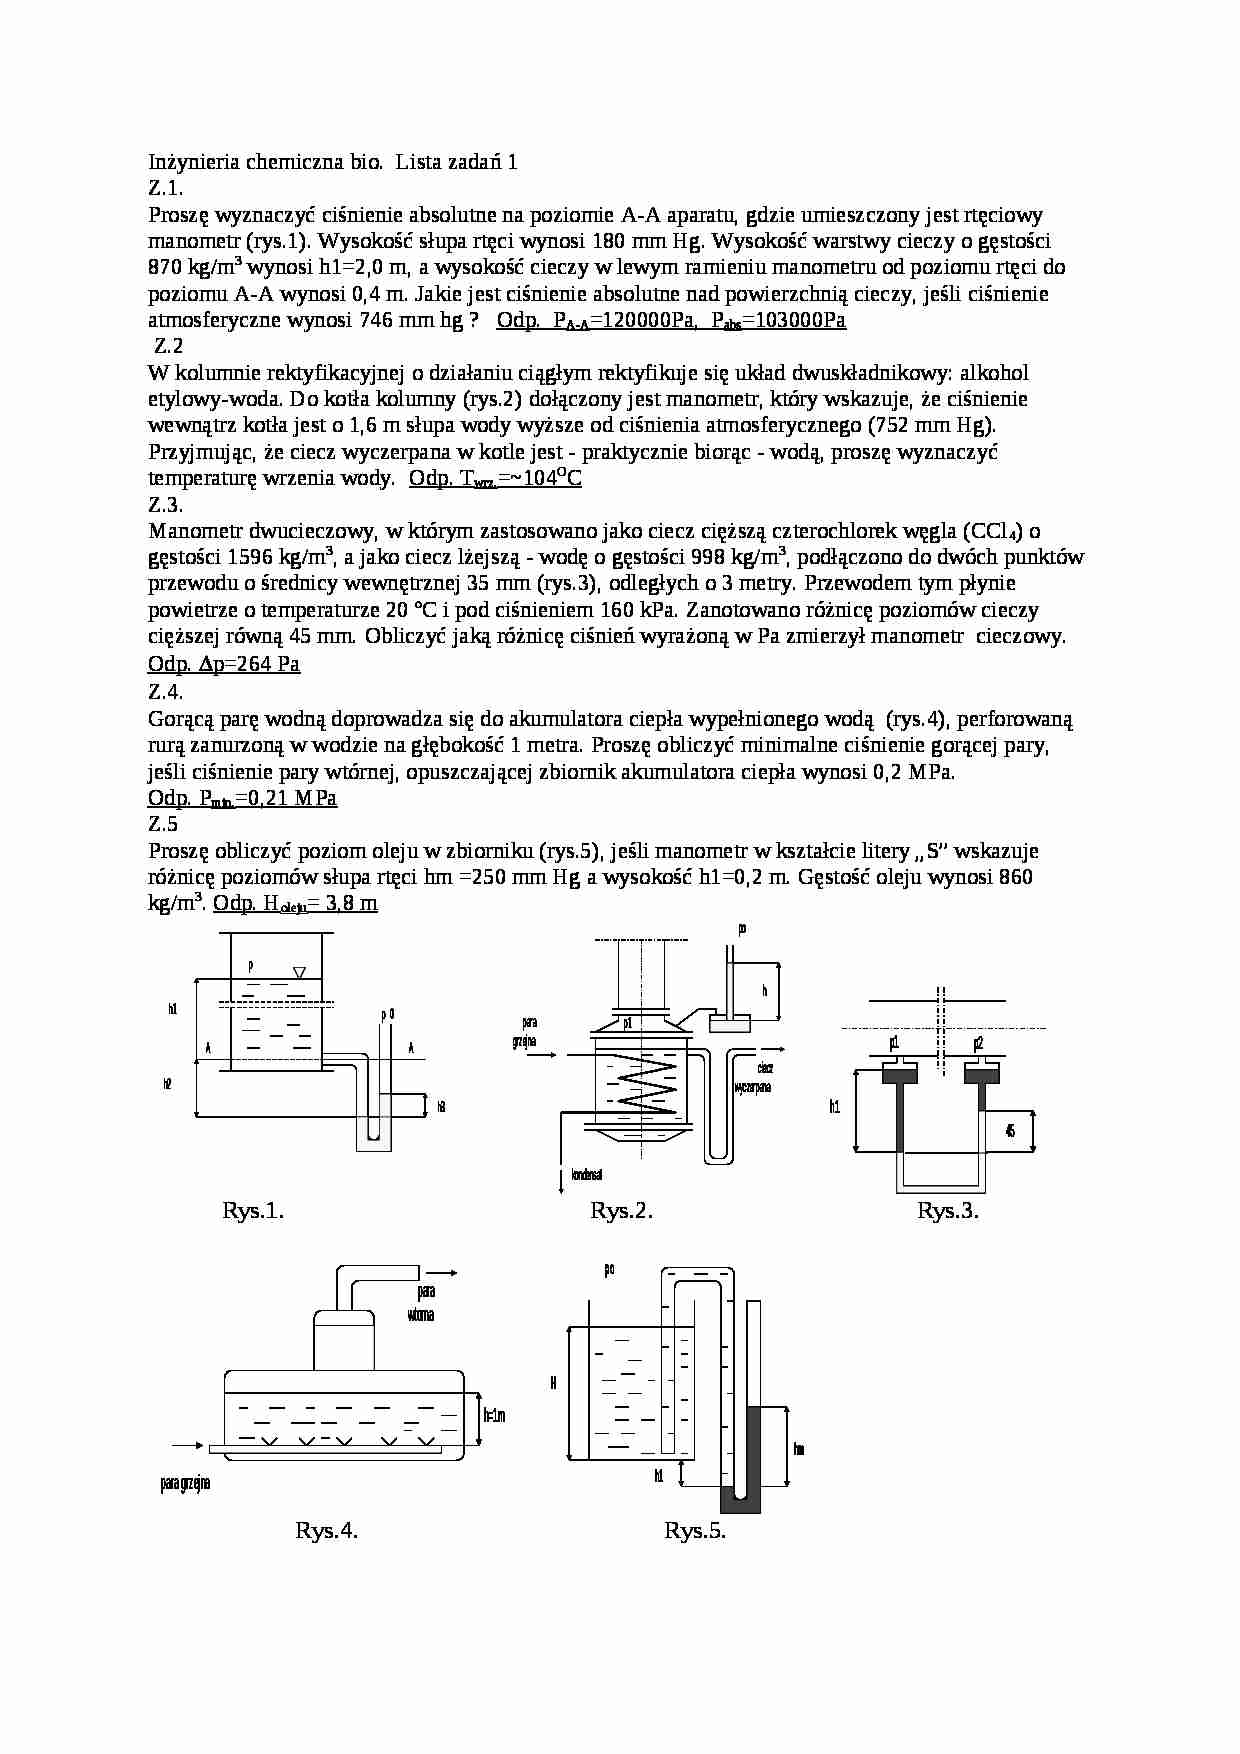 Inżynieria chemiczna- lista zadań - strona 1